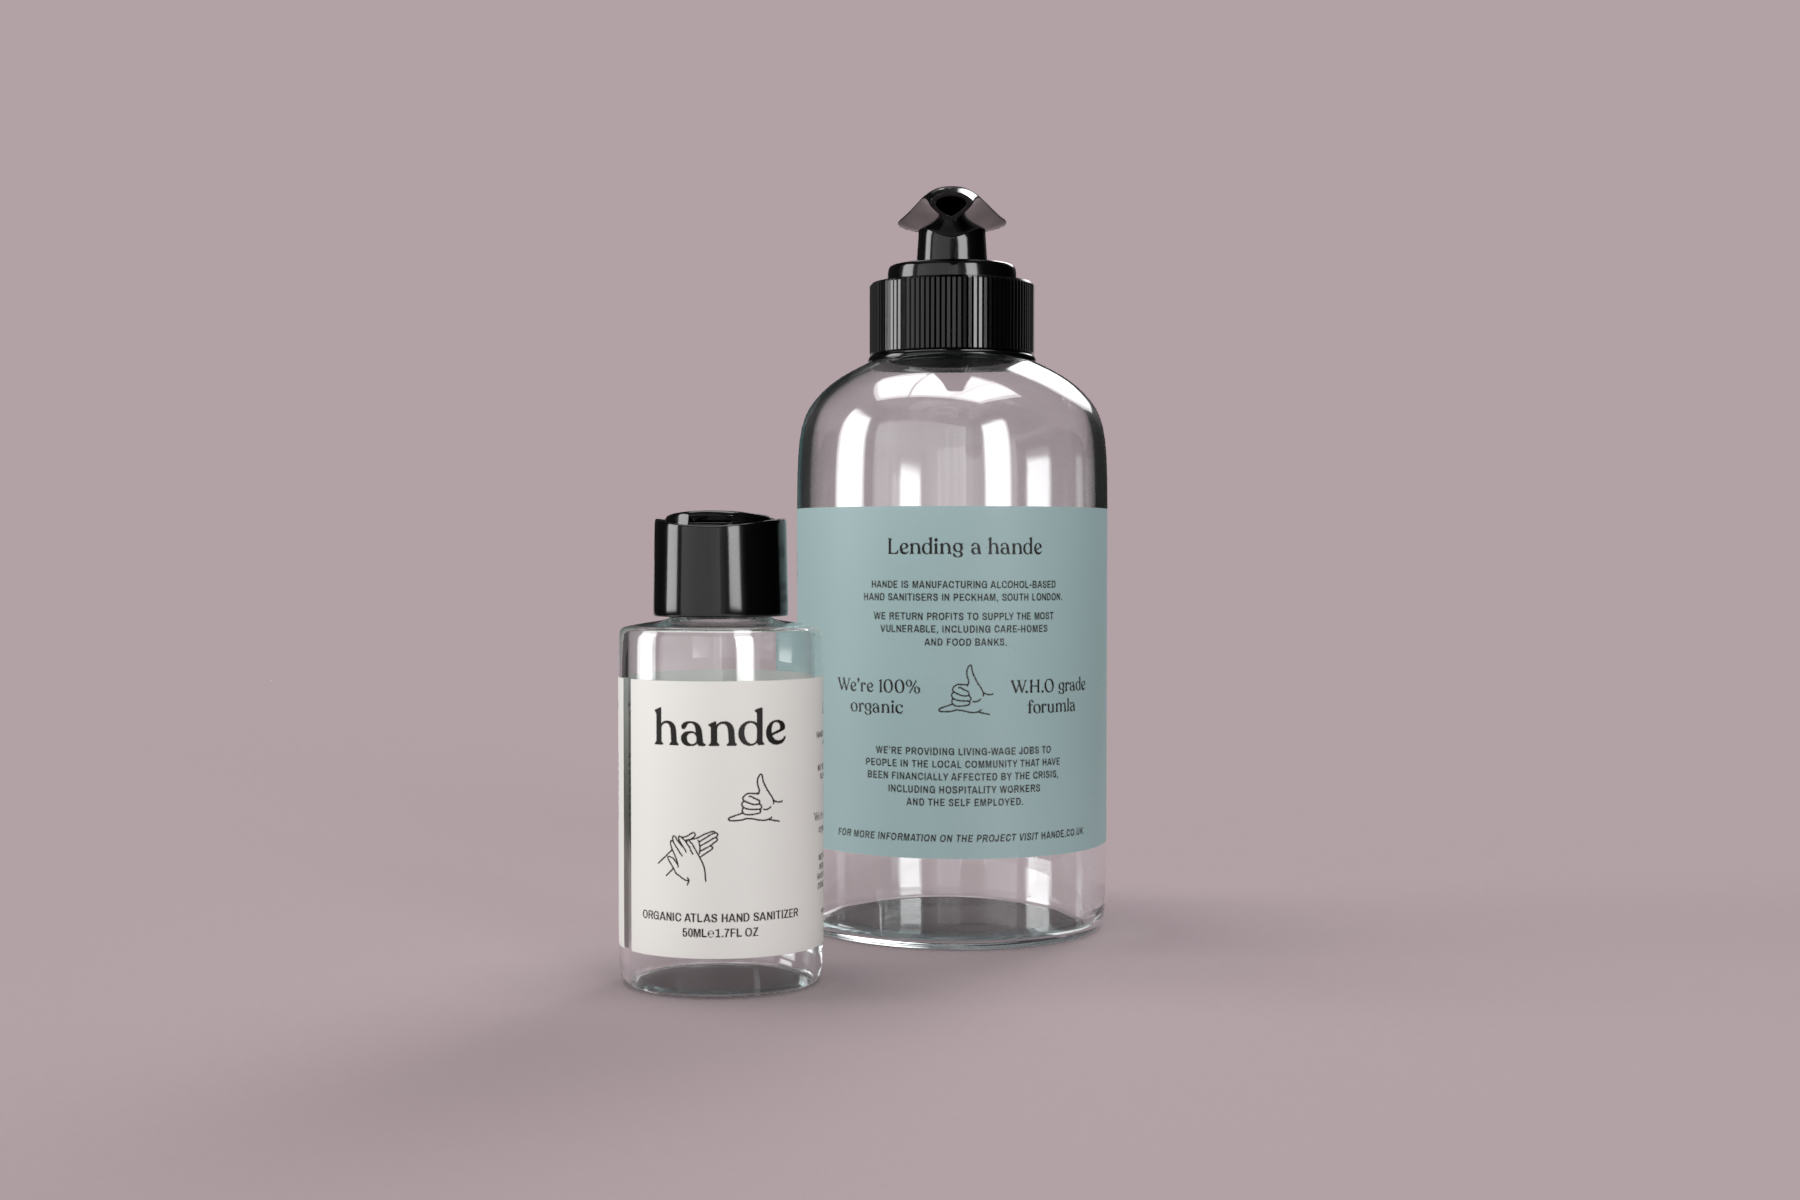 Hande, a new Peckham-based Organic Hand Sanitiser